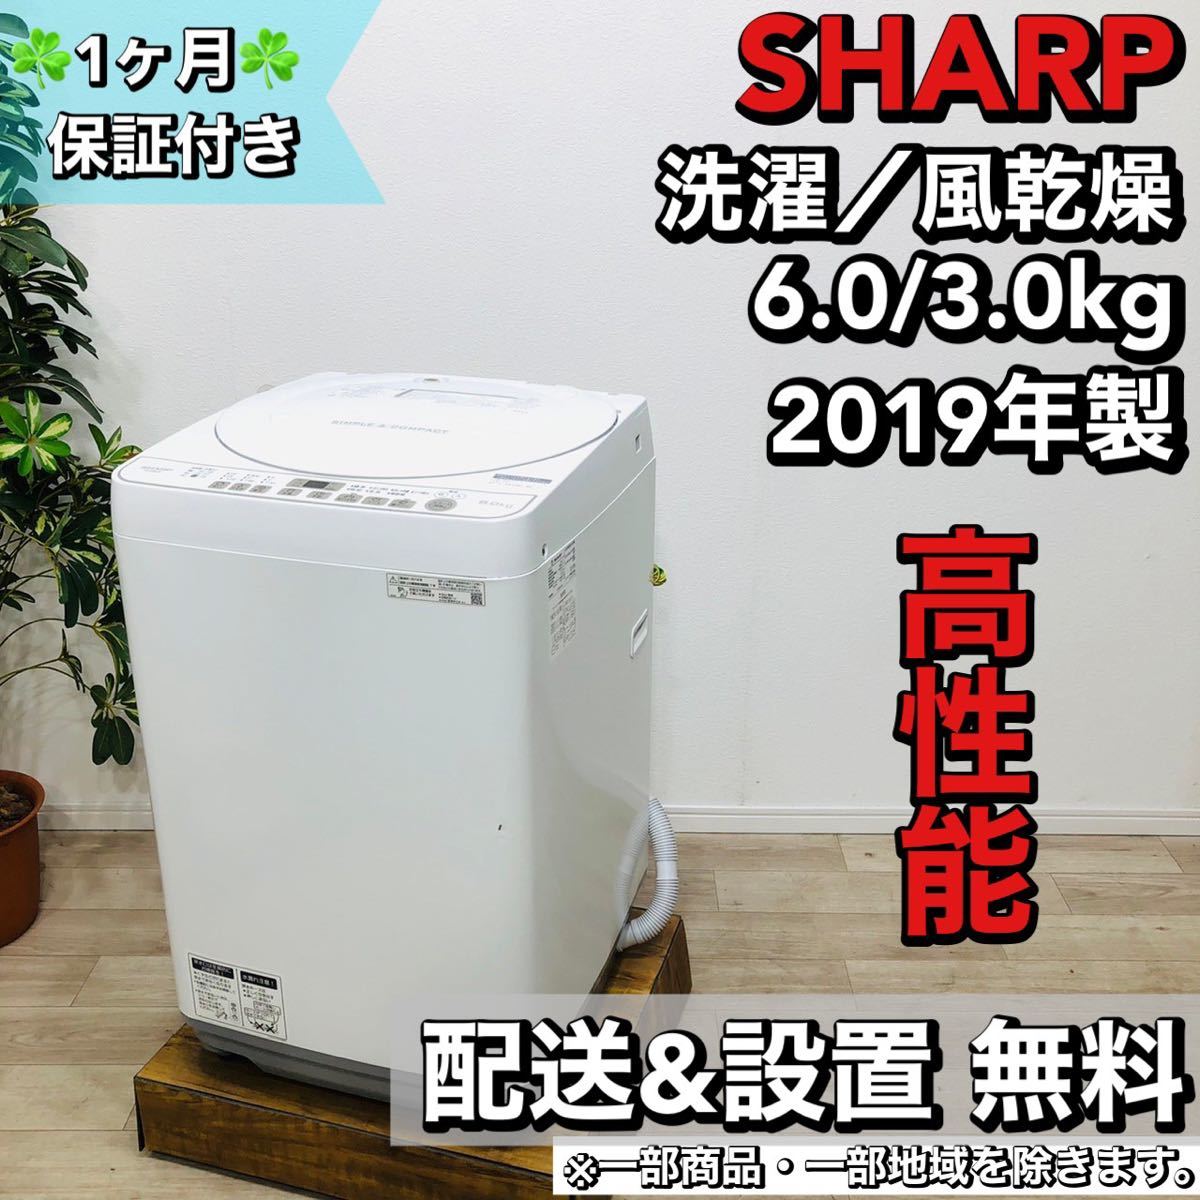 割引発見 SHARP a1459 洗濯機 6.0kg 2019年製 6 5kg以上